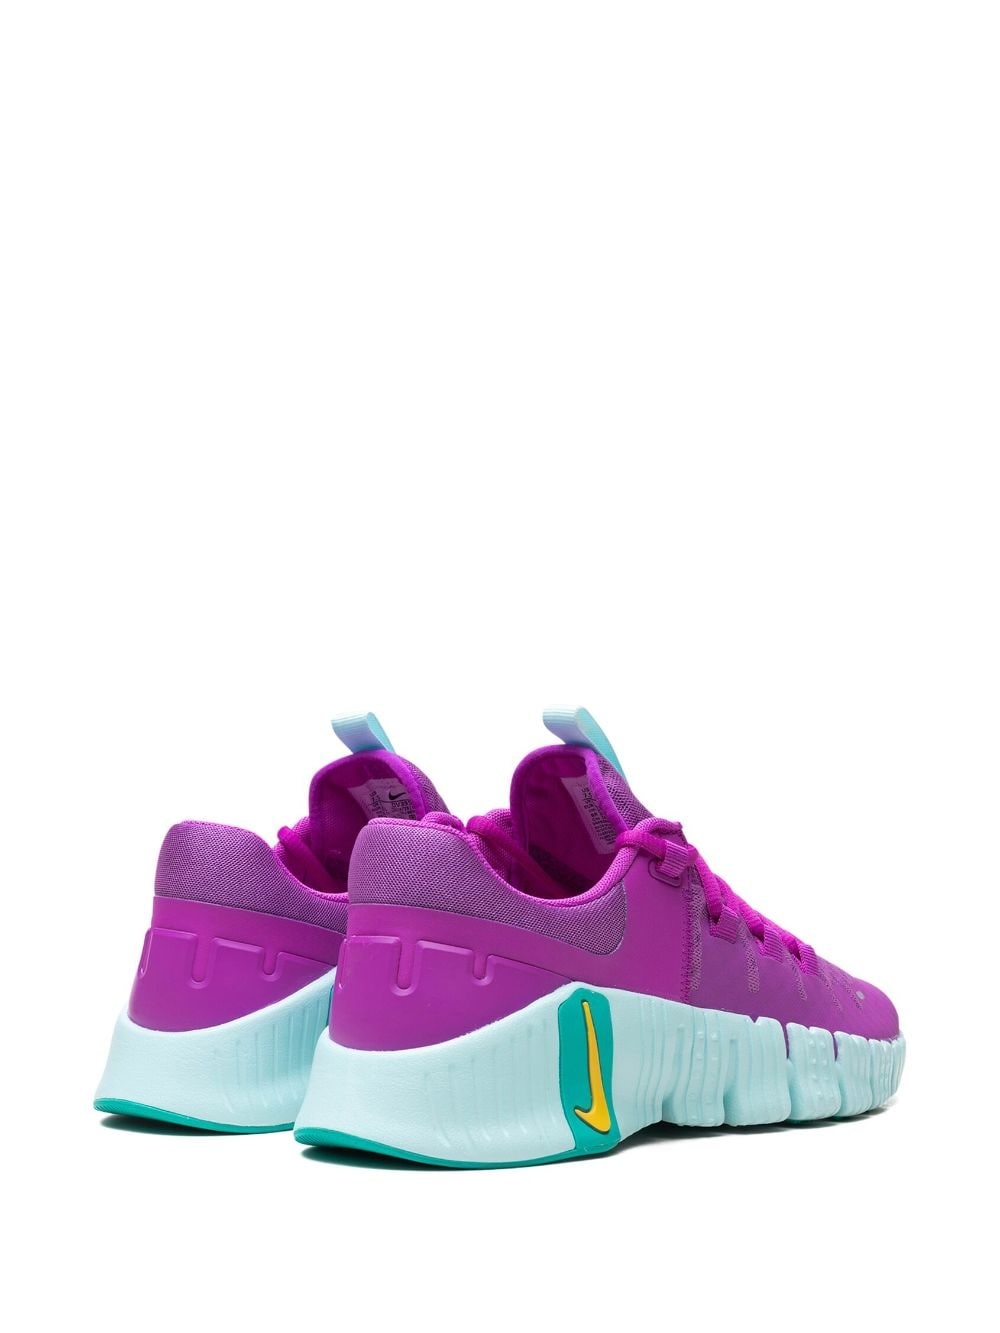 Free Metcon 5 "Hyper Violet" sneakers - 3